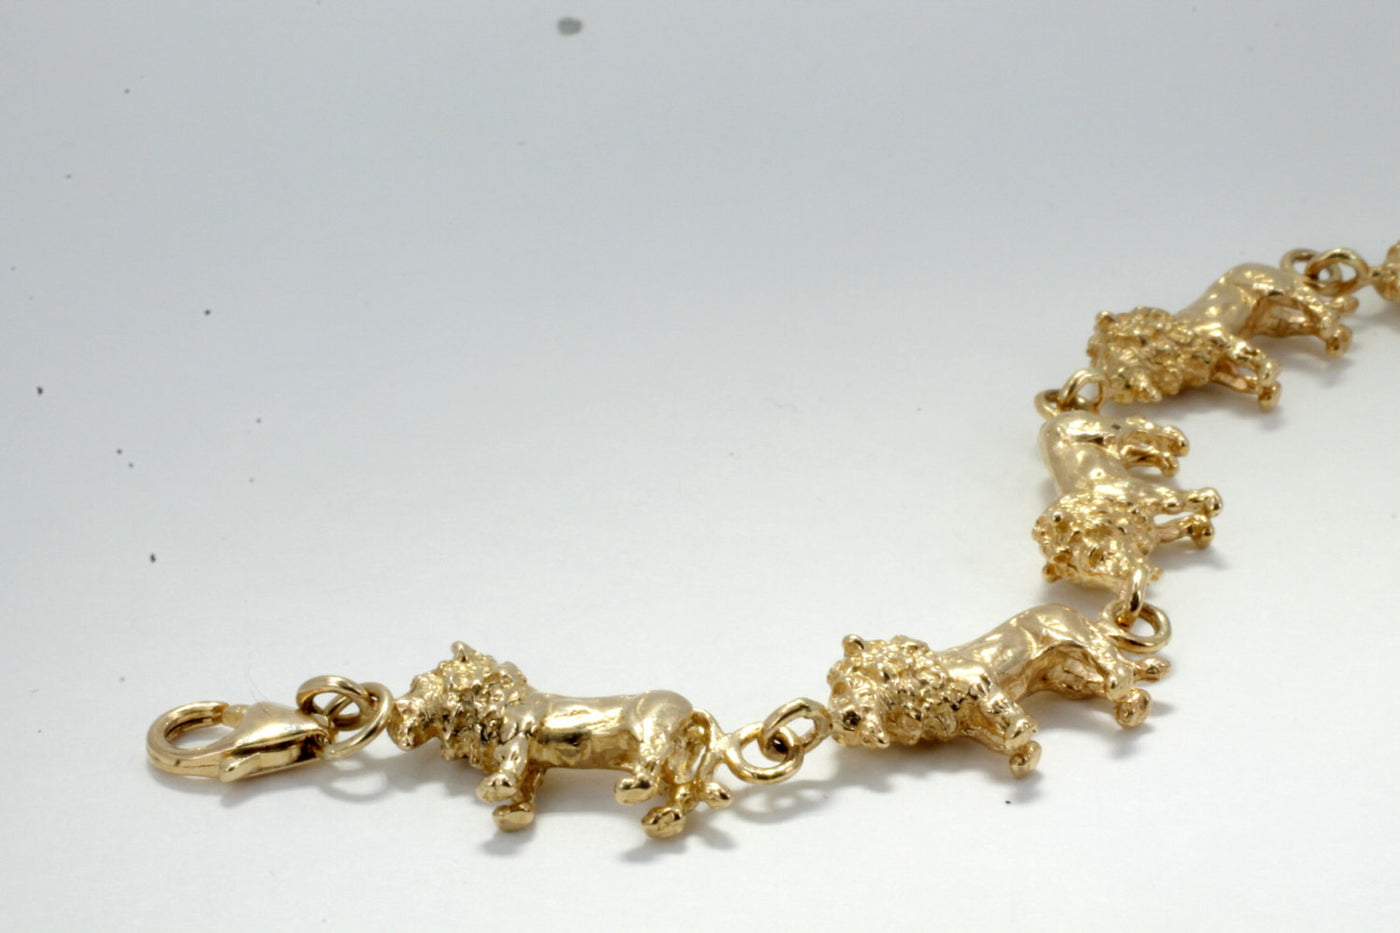 Lion Bracelet for men in 22ct gold at PureJewels UK